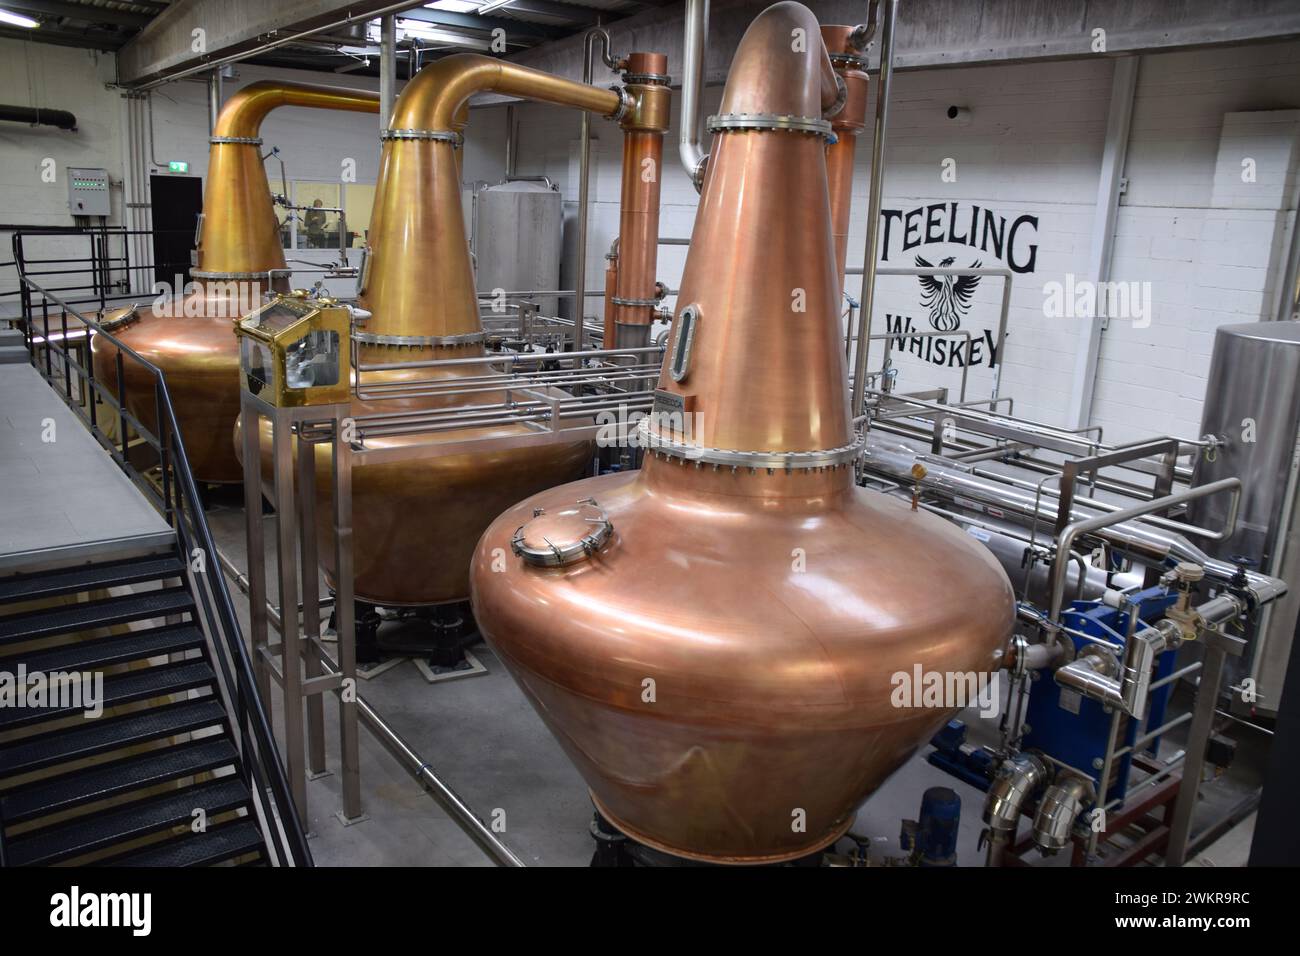 Distillateurs de cuivre à la distillerie de whisky Teeling. Dublin, Irlande. Banque D'Images